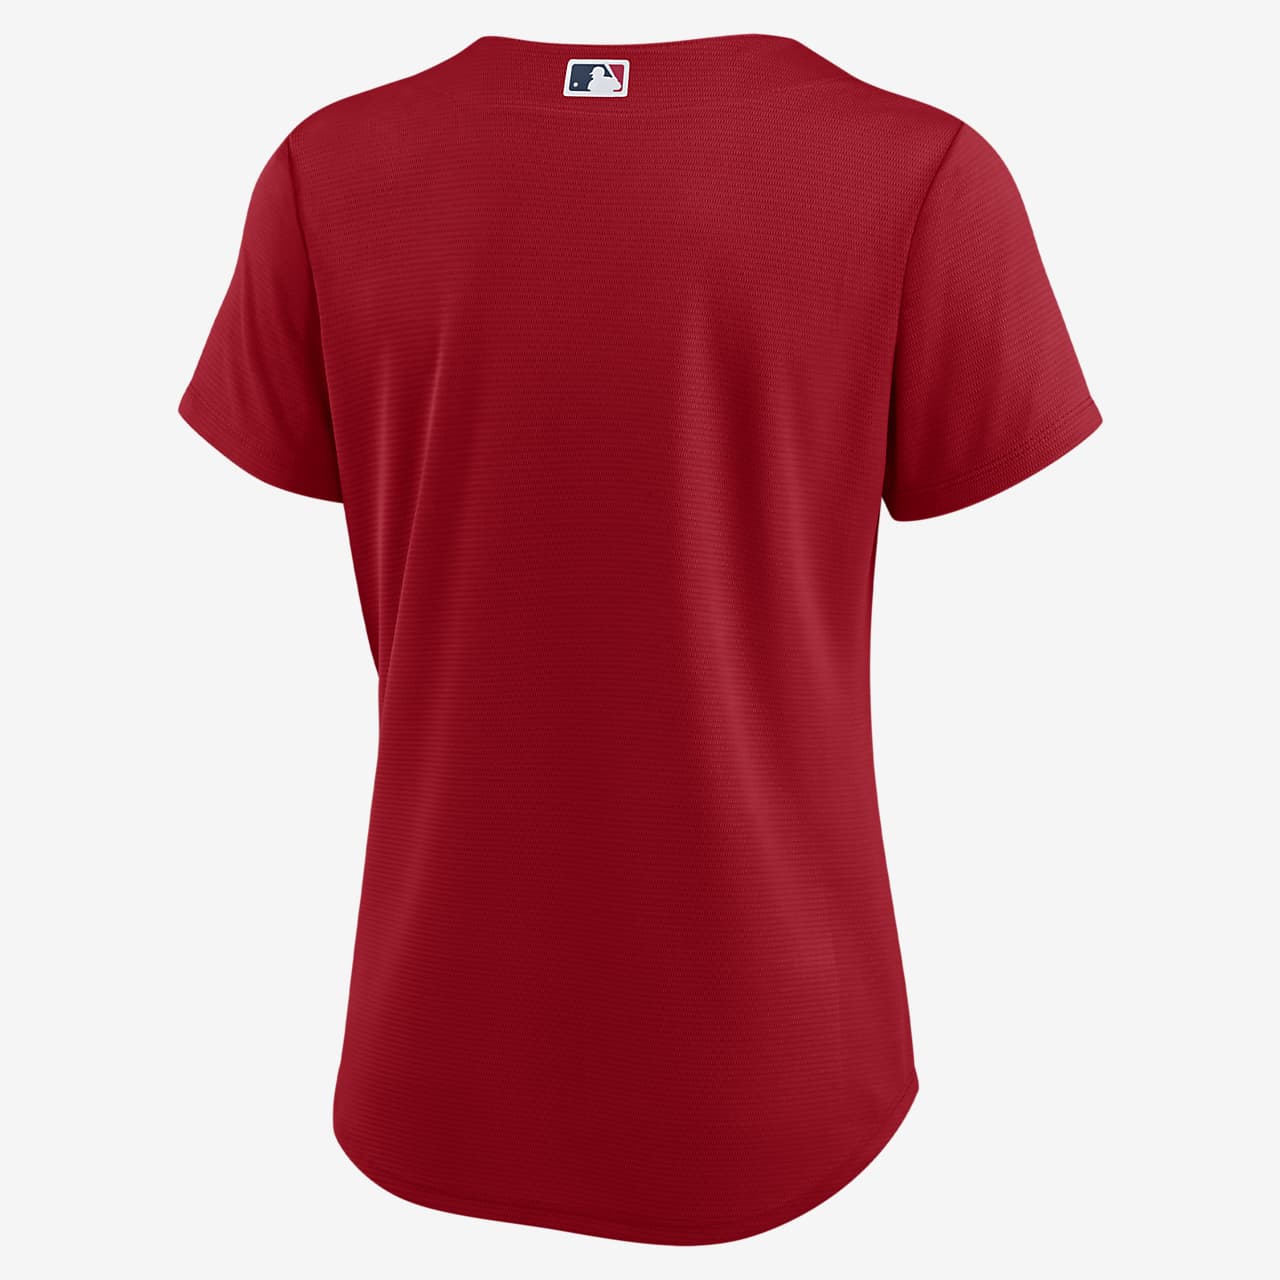 womens red baseball jersey